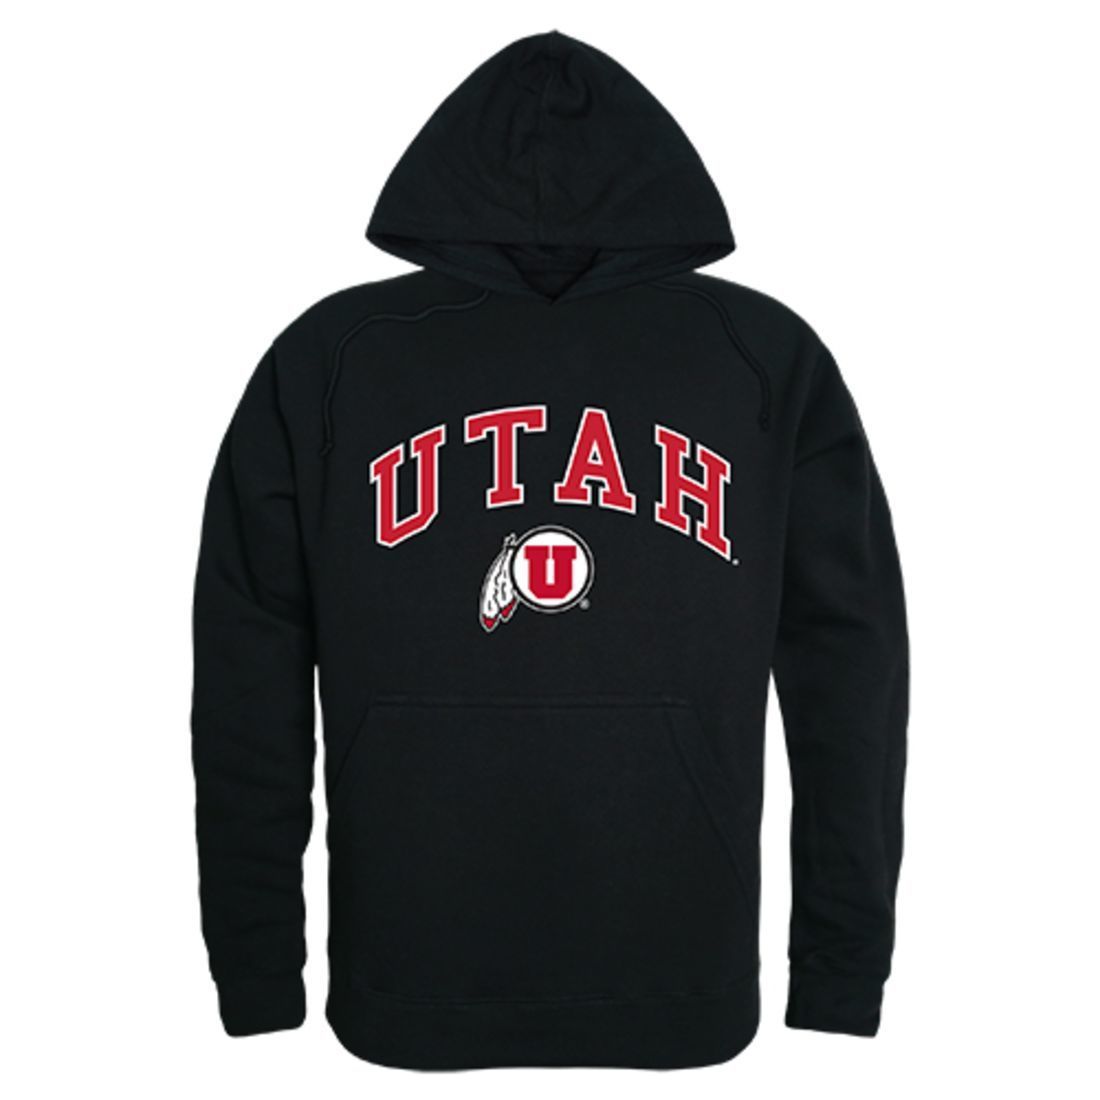 University of Utah Utes Campus Hoodie Sweatshirt Black-Campus-Wardrobe